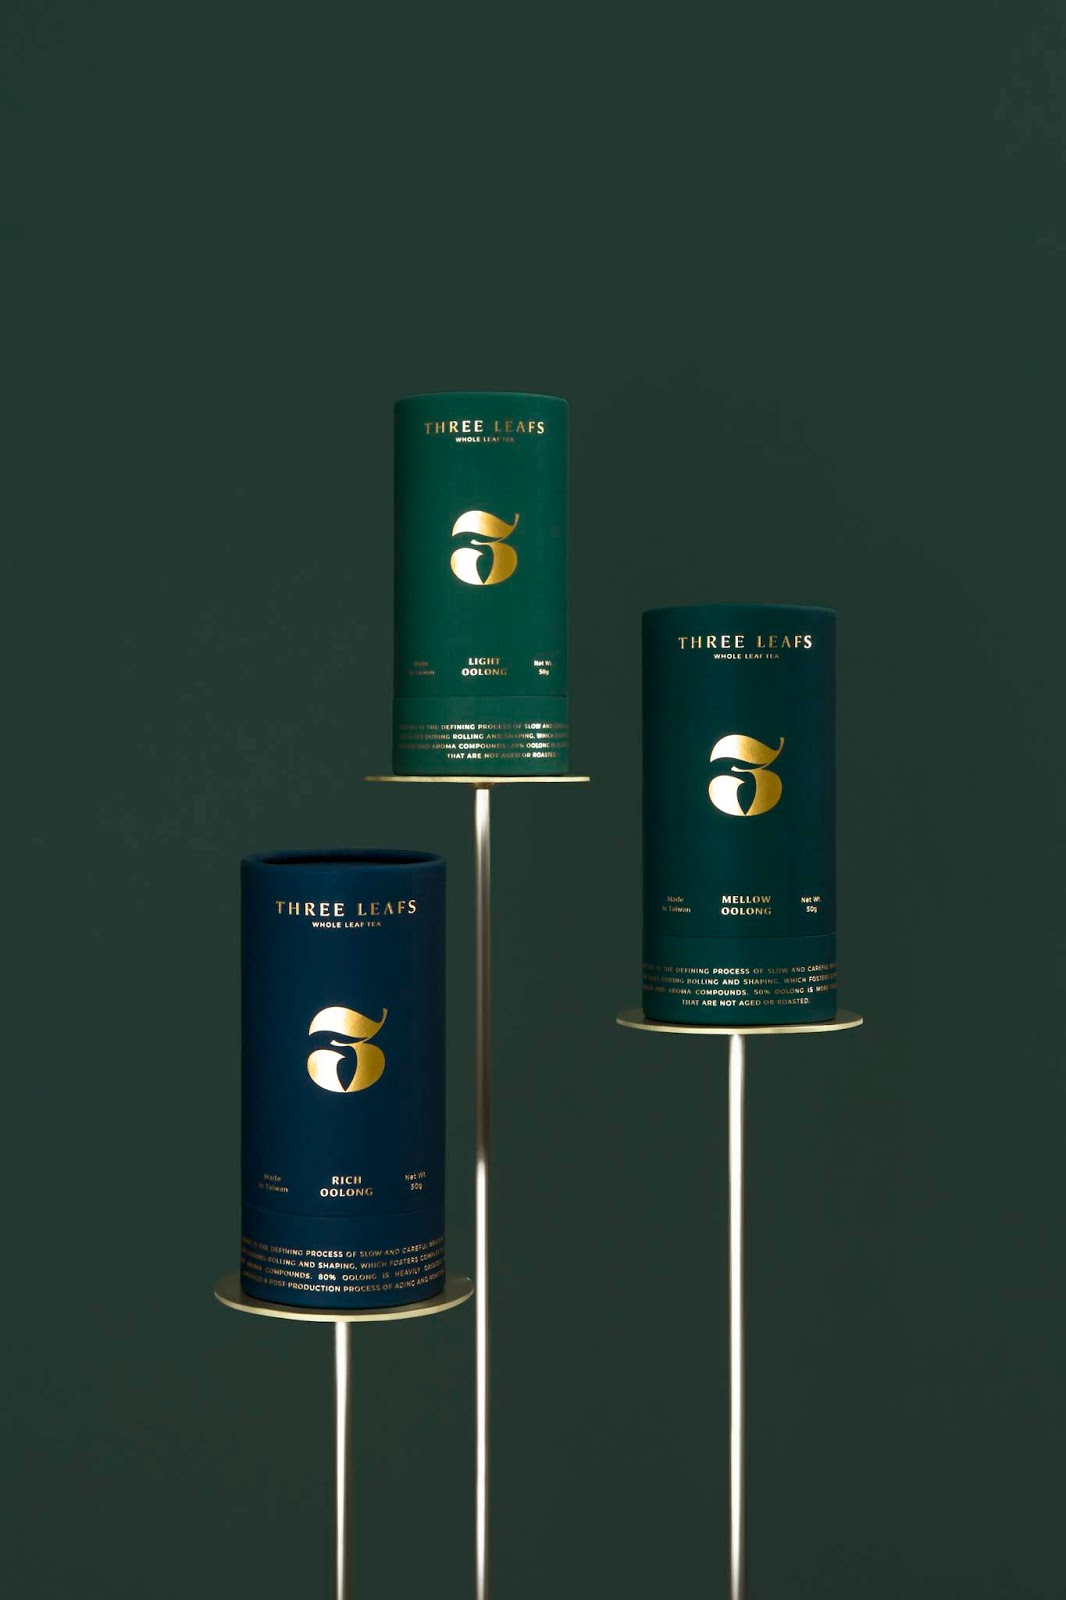 高档茶叶茶具便携茶铝箔袋西安oe欧亿体育app官方下载
品牌策划包装设计VI设计logo设计品牌设计